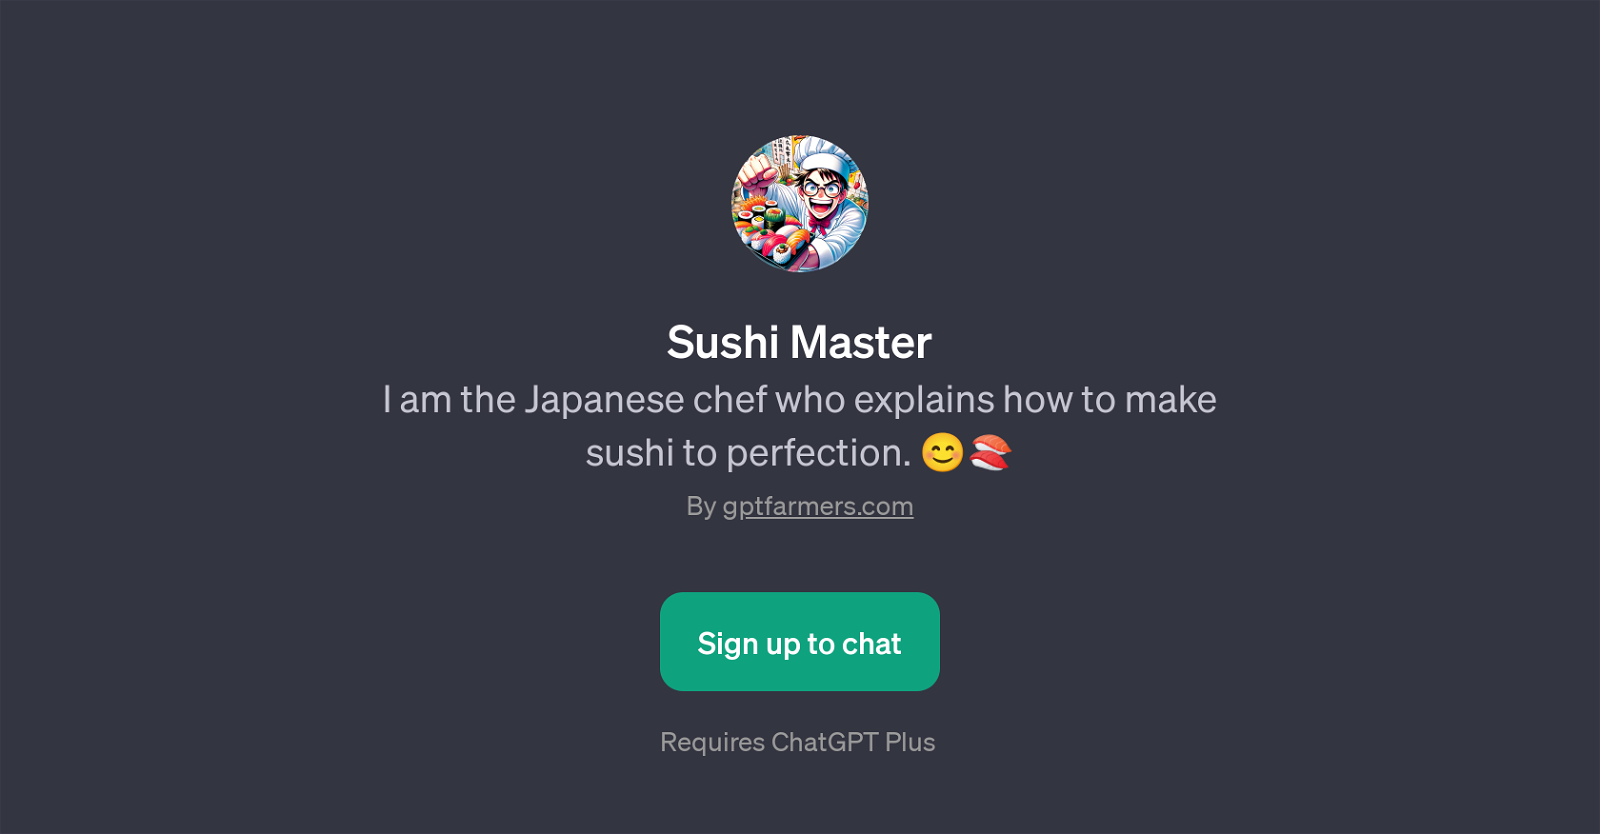 Sushi Master website